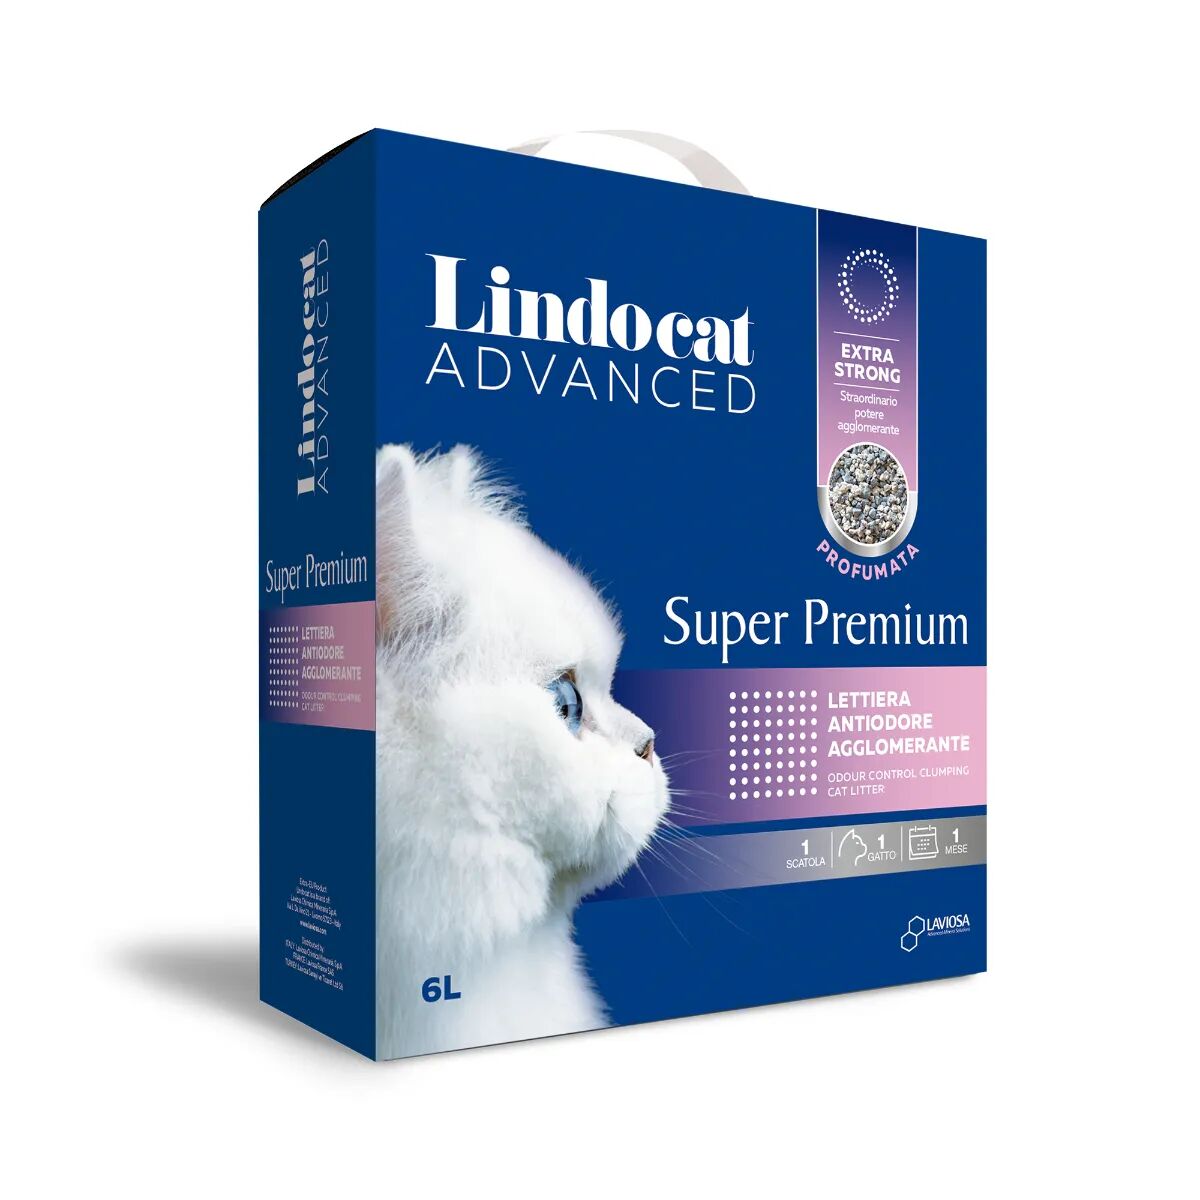 LINDOCAT Advanced Lettiera Agglomerante Super Premium Profumata 6L